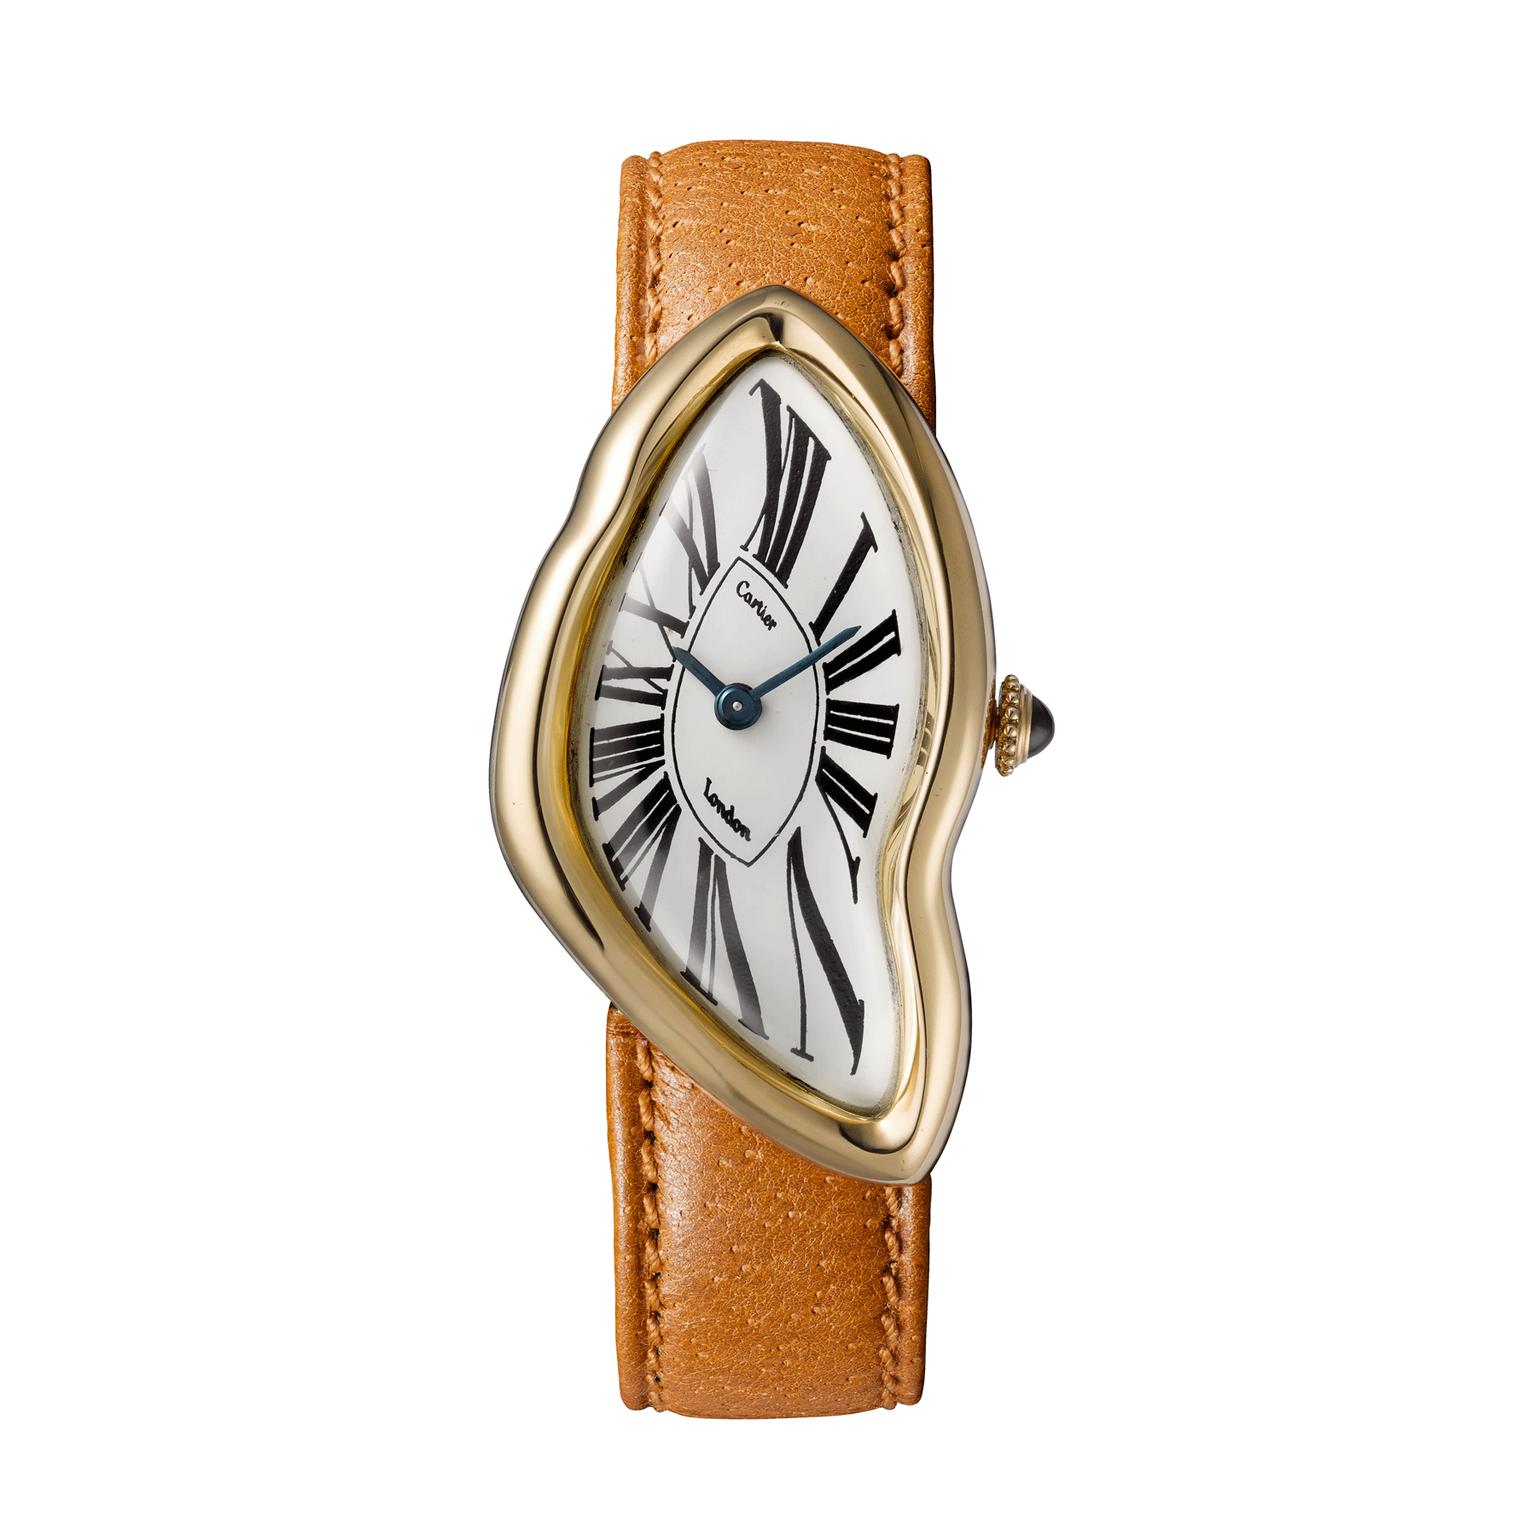 Cartier Crash watch 1967